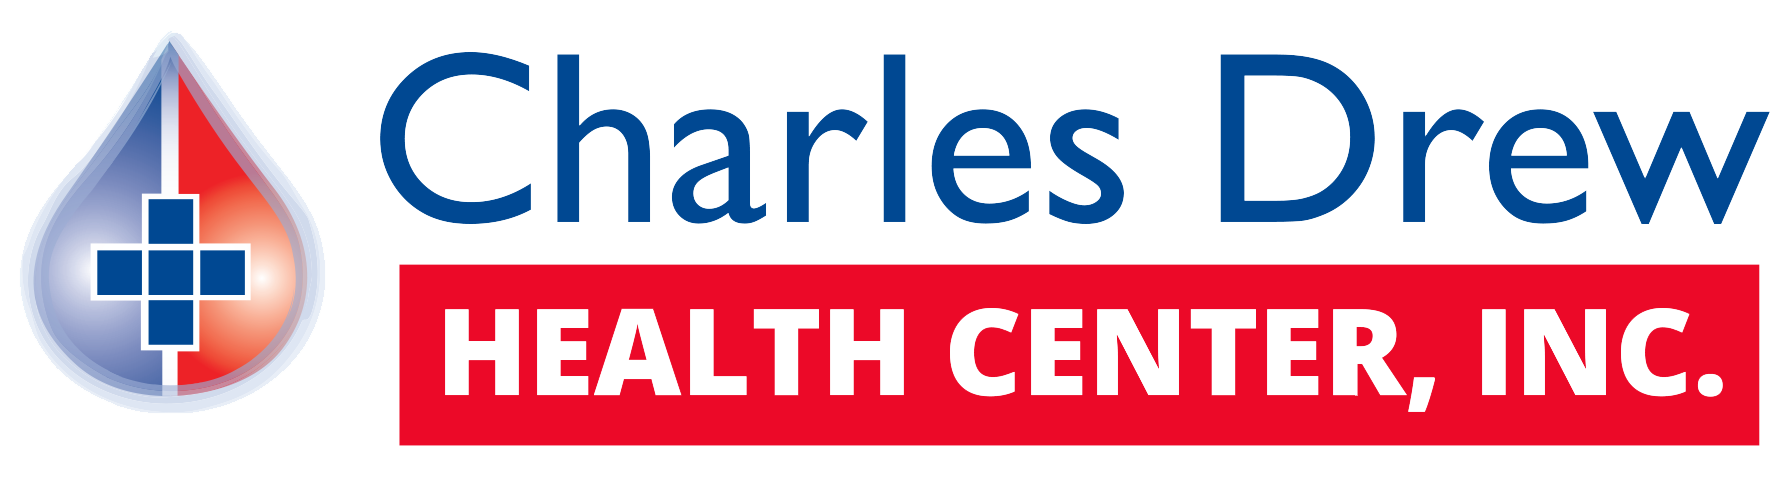 Charles Drew Health Center Pharmacy